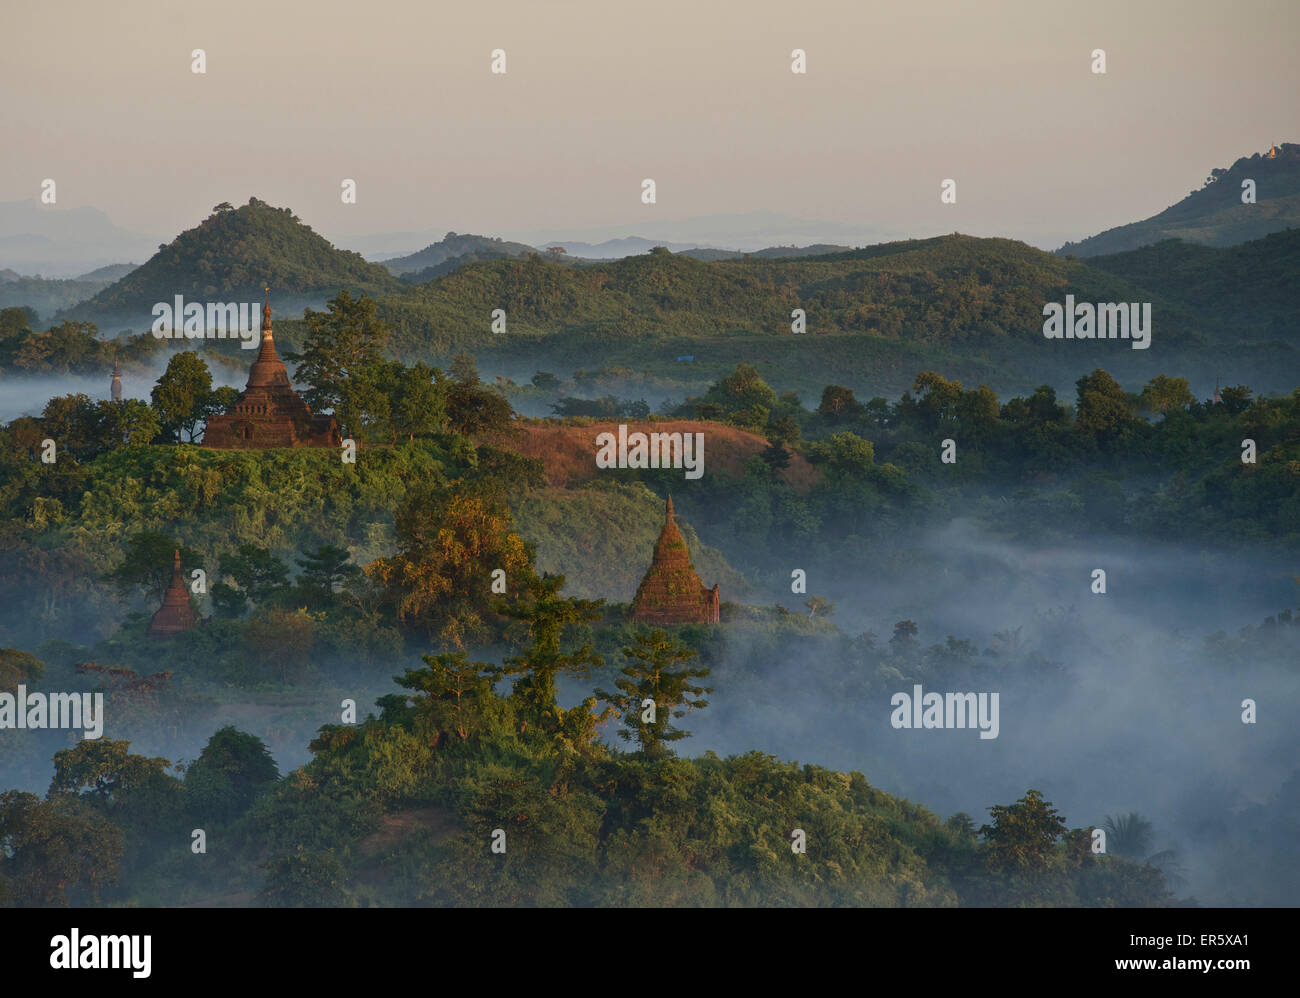 View over the hills and pagodas in the evening mist at Mrauk U, Myohaung north of Sittwe, Akyab, Rakhine State, Arakan, Myanmar, Stock Photo